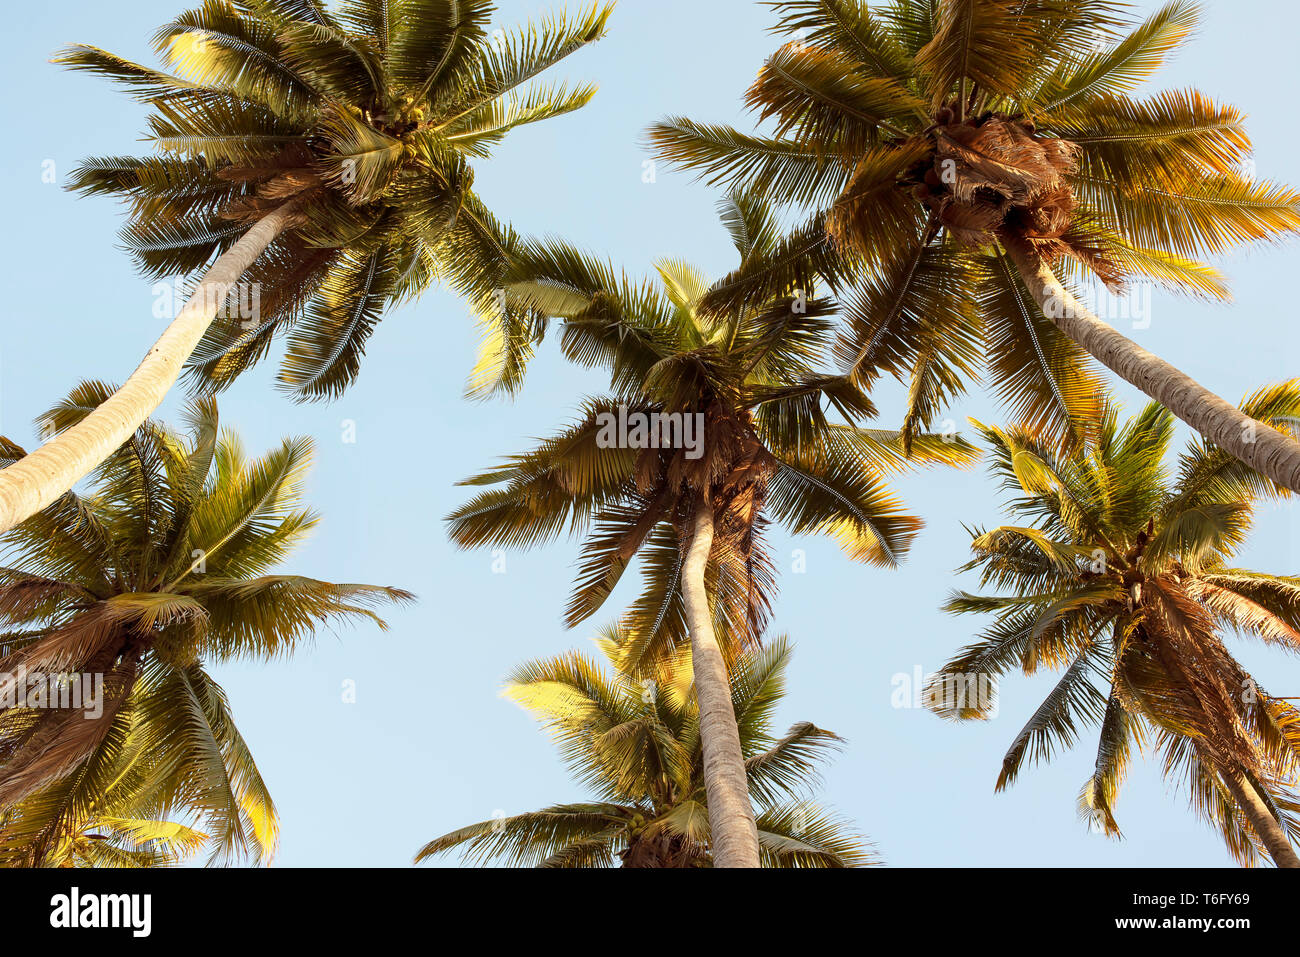 Üppige Palmen von unten mit sanften Tönen. Zu Kokospalmen. Reisen Lifestyle/Tropical holiday Konzept. Chacahua, Mexiko. Apr 2019 Stockfoto